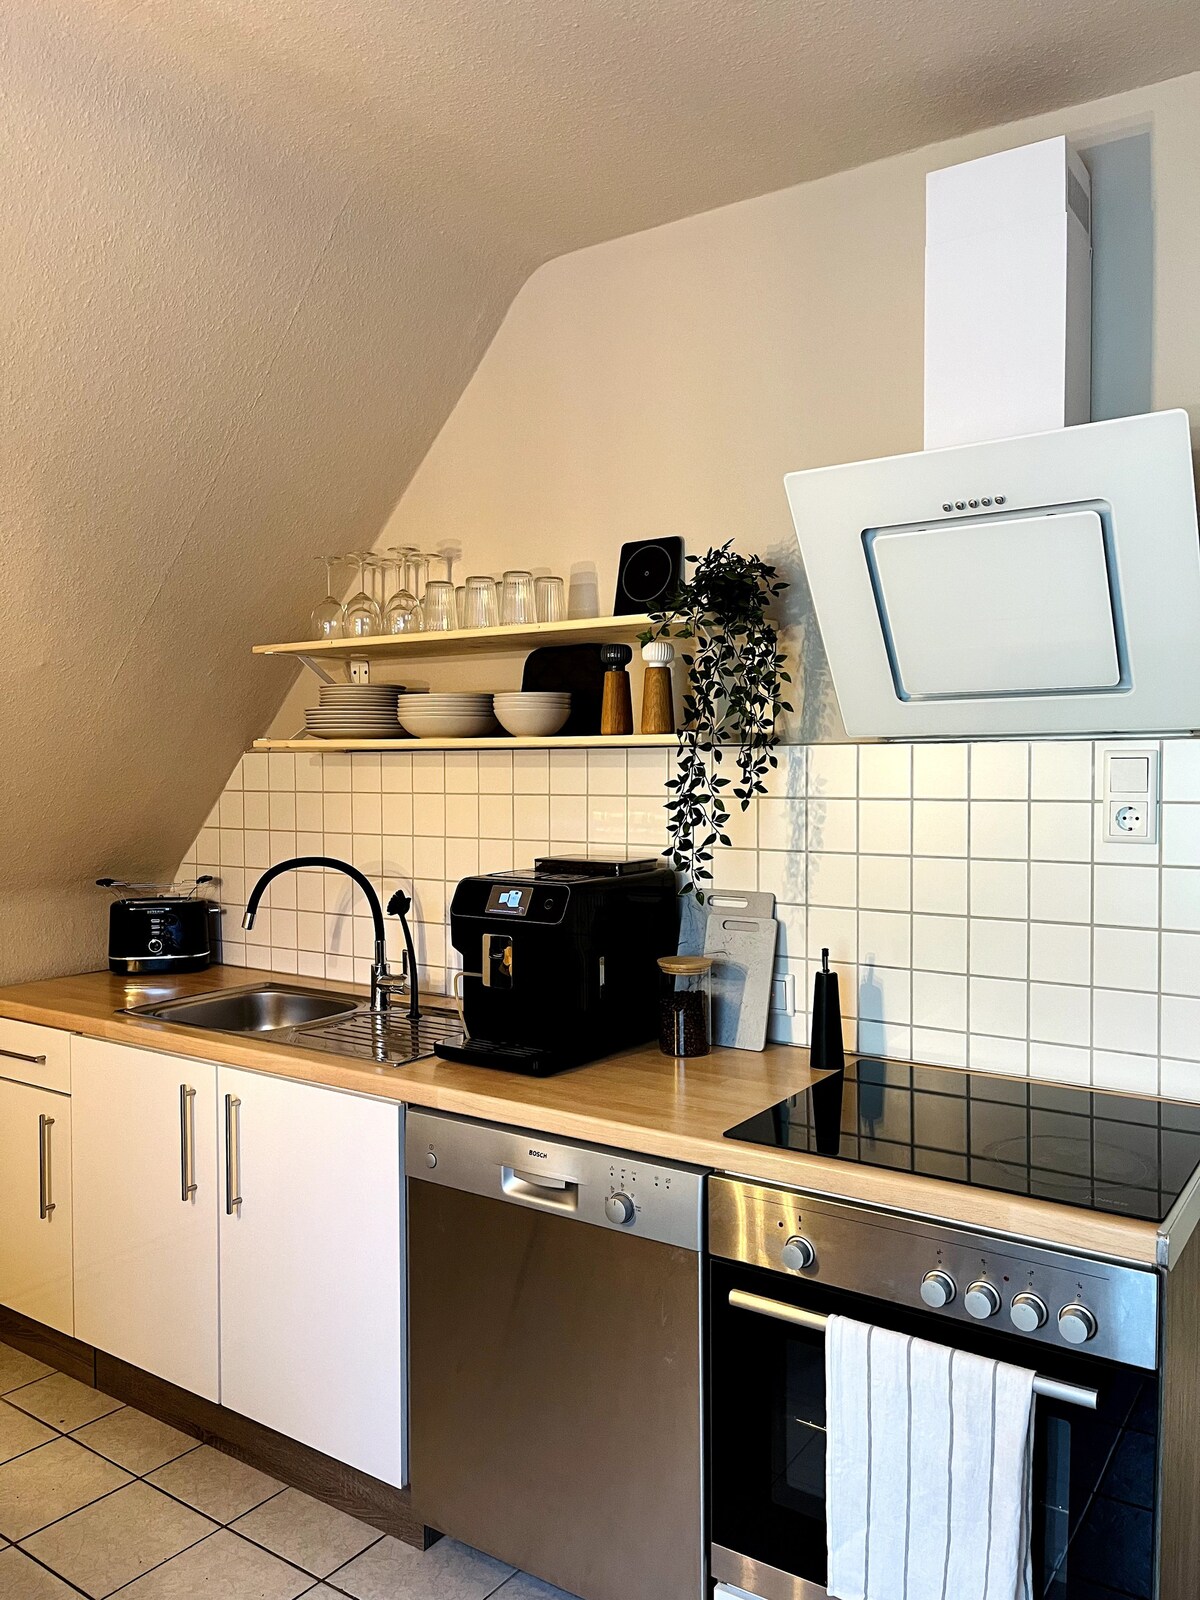 OVER NIGHT Apartment No.1: Dachterrasse | Küche